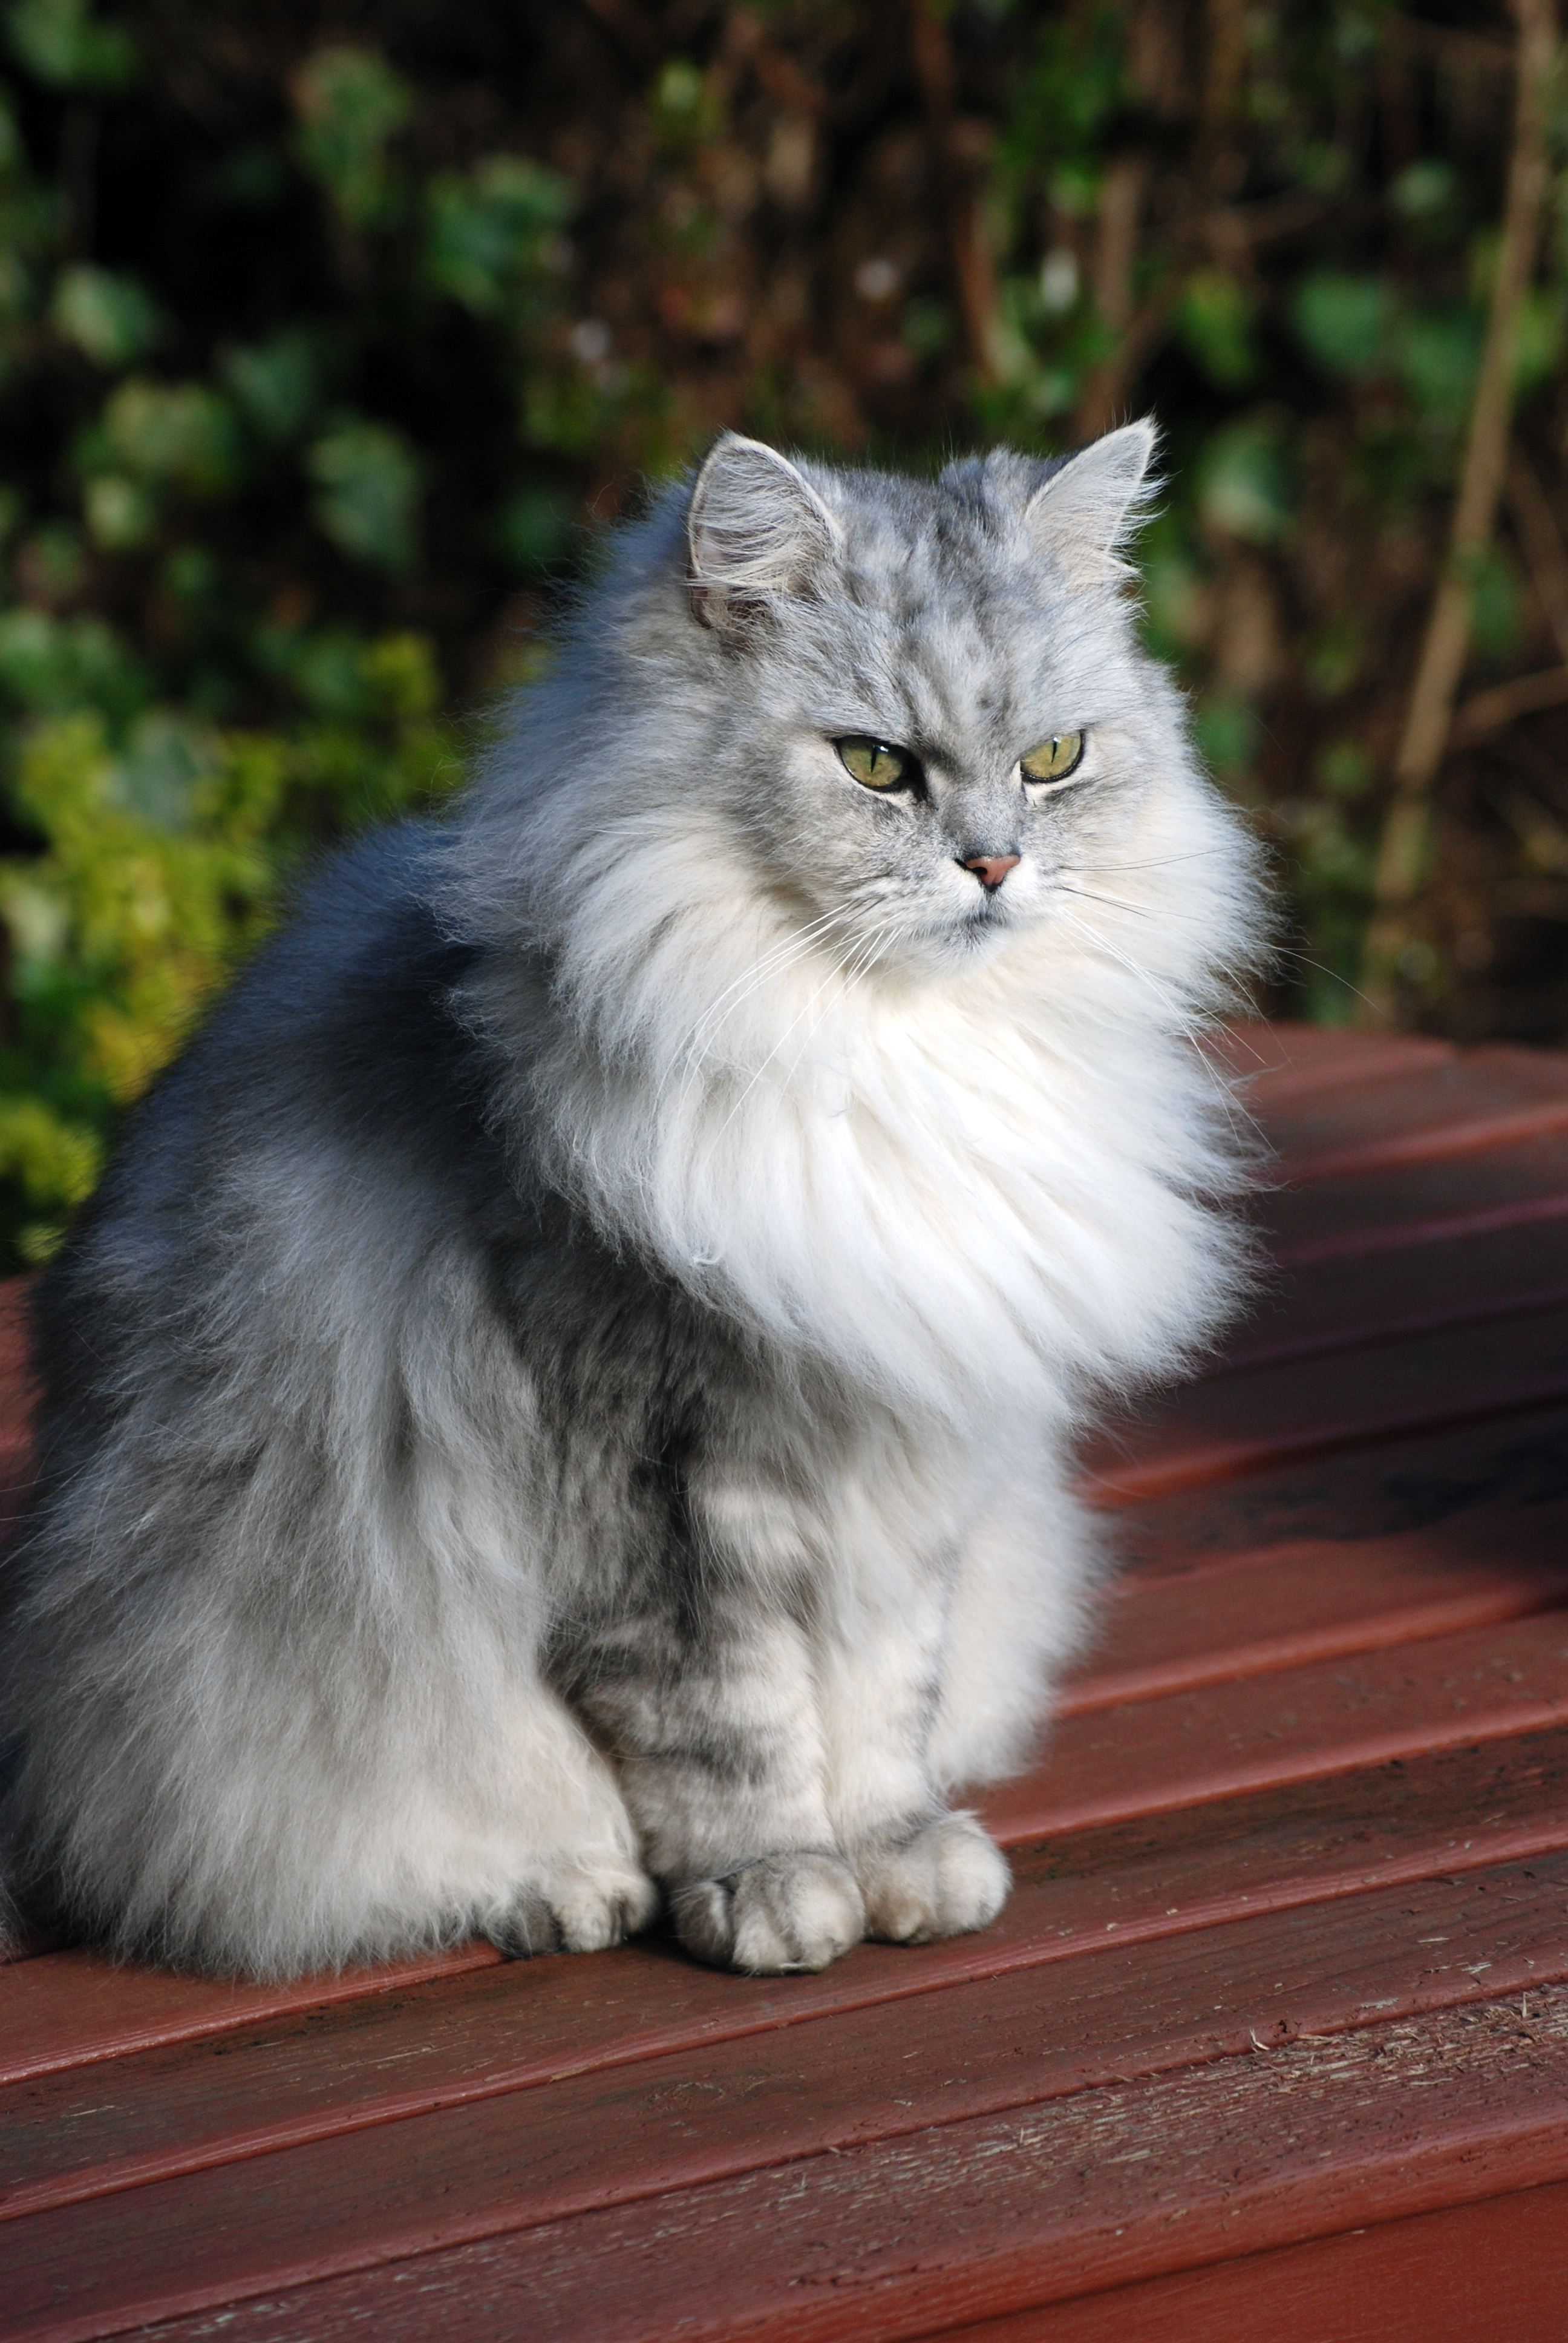 File:Chinchilla cat (3228221937).jpg - Wikimedia Commons